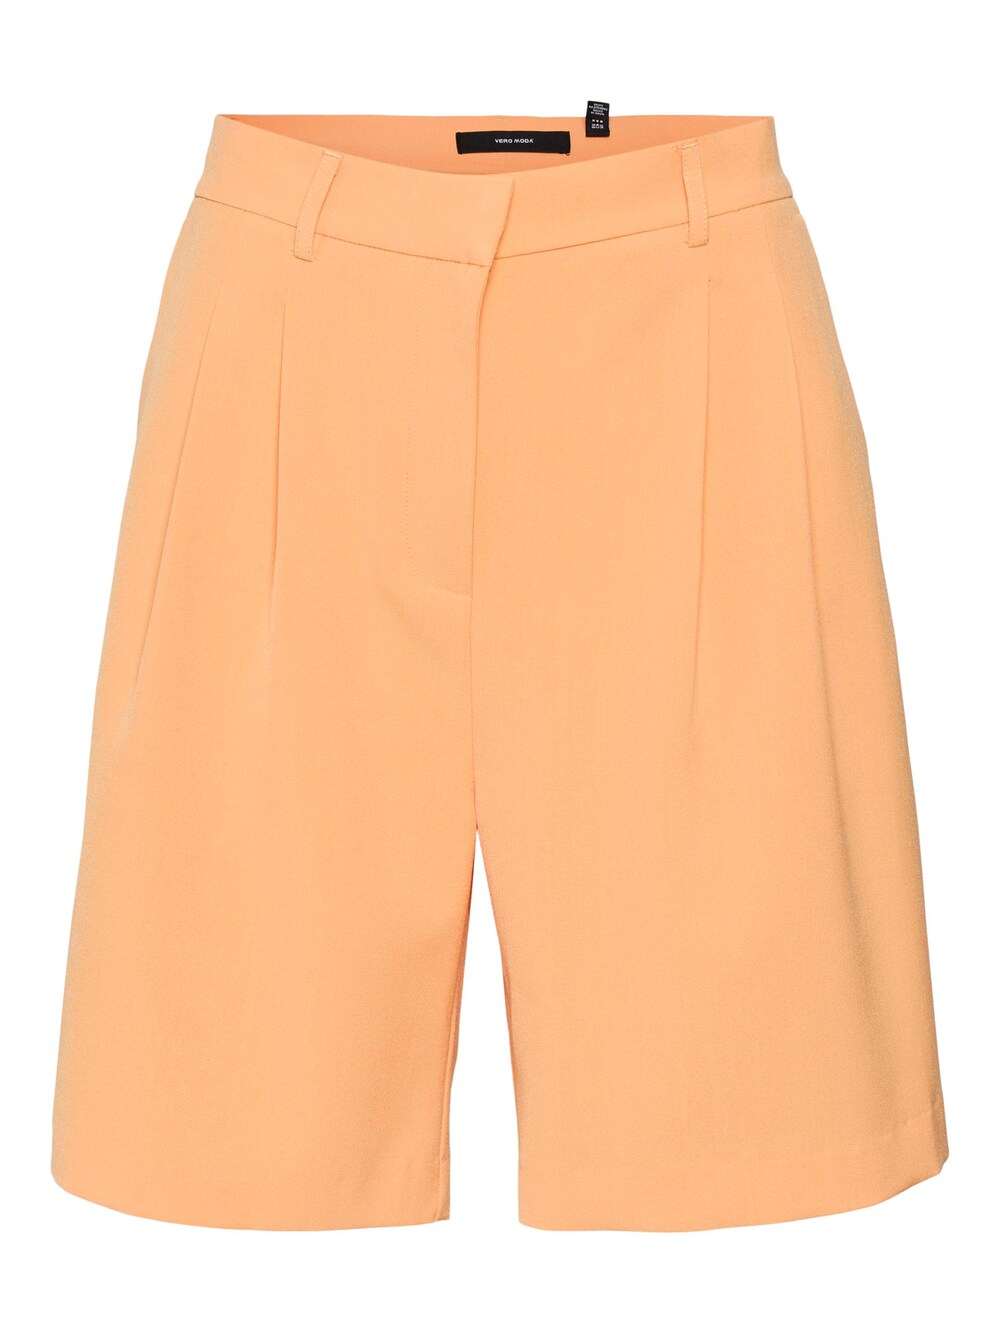 Свободные брюки со складками спереди VERO MODA TROIAN, апельсин